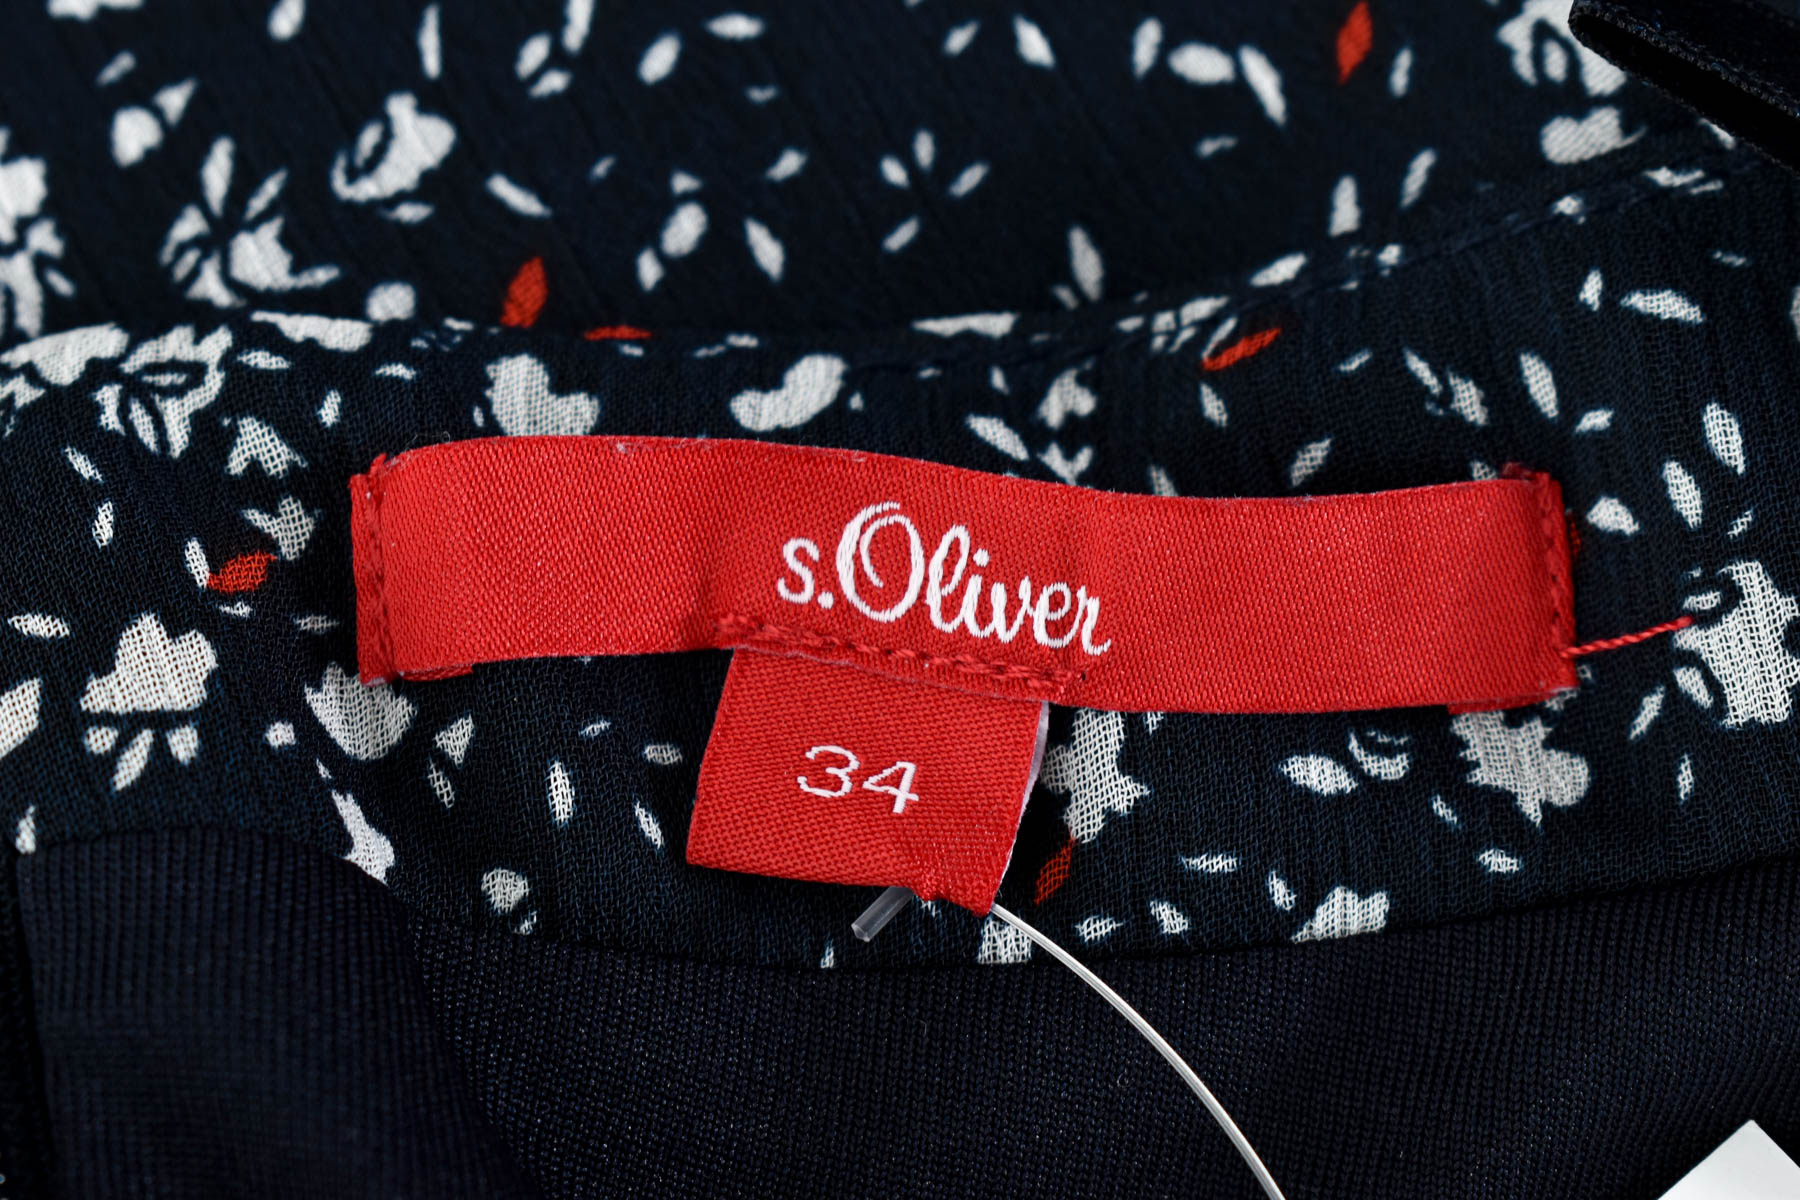 Skirt - S.Oliver - 2